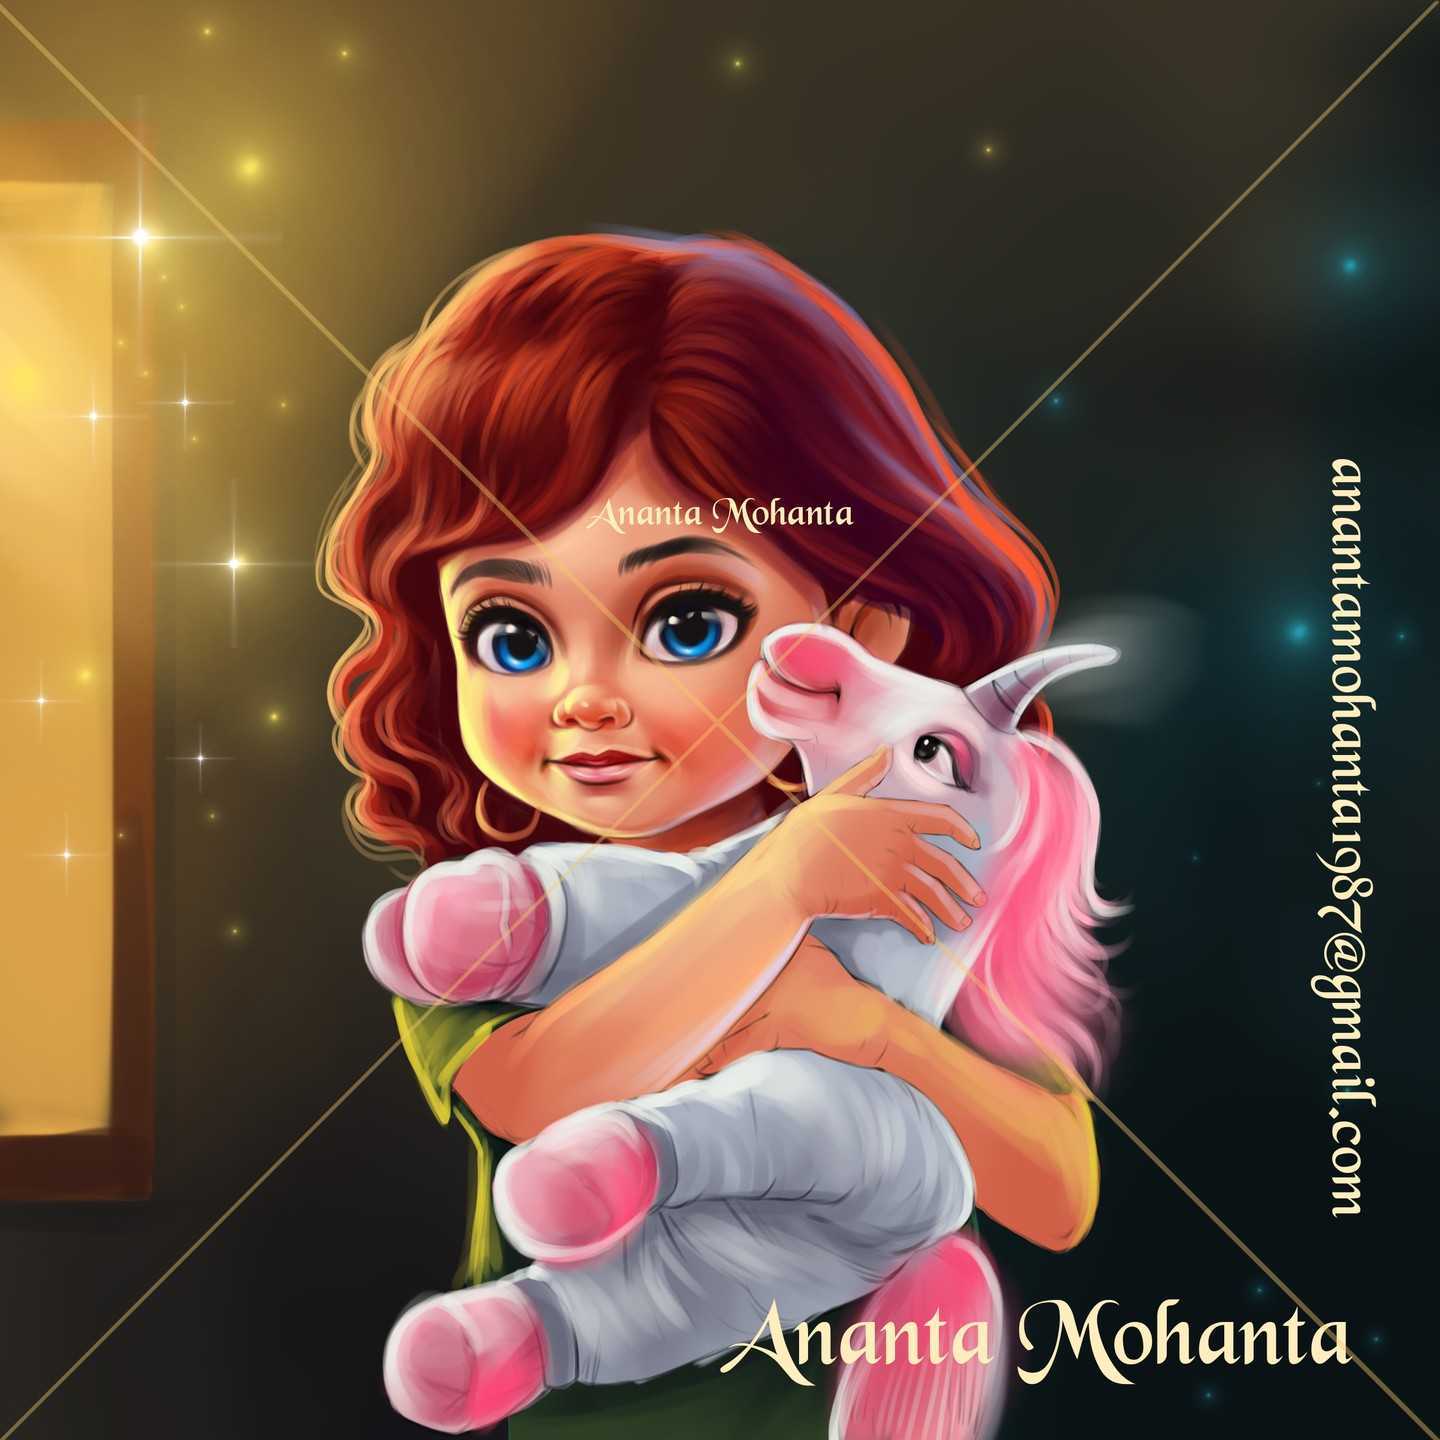 Colorful Characters: Ananta Mohanta's Vibrant Illustrations - Ananta Mohanta